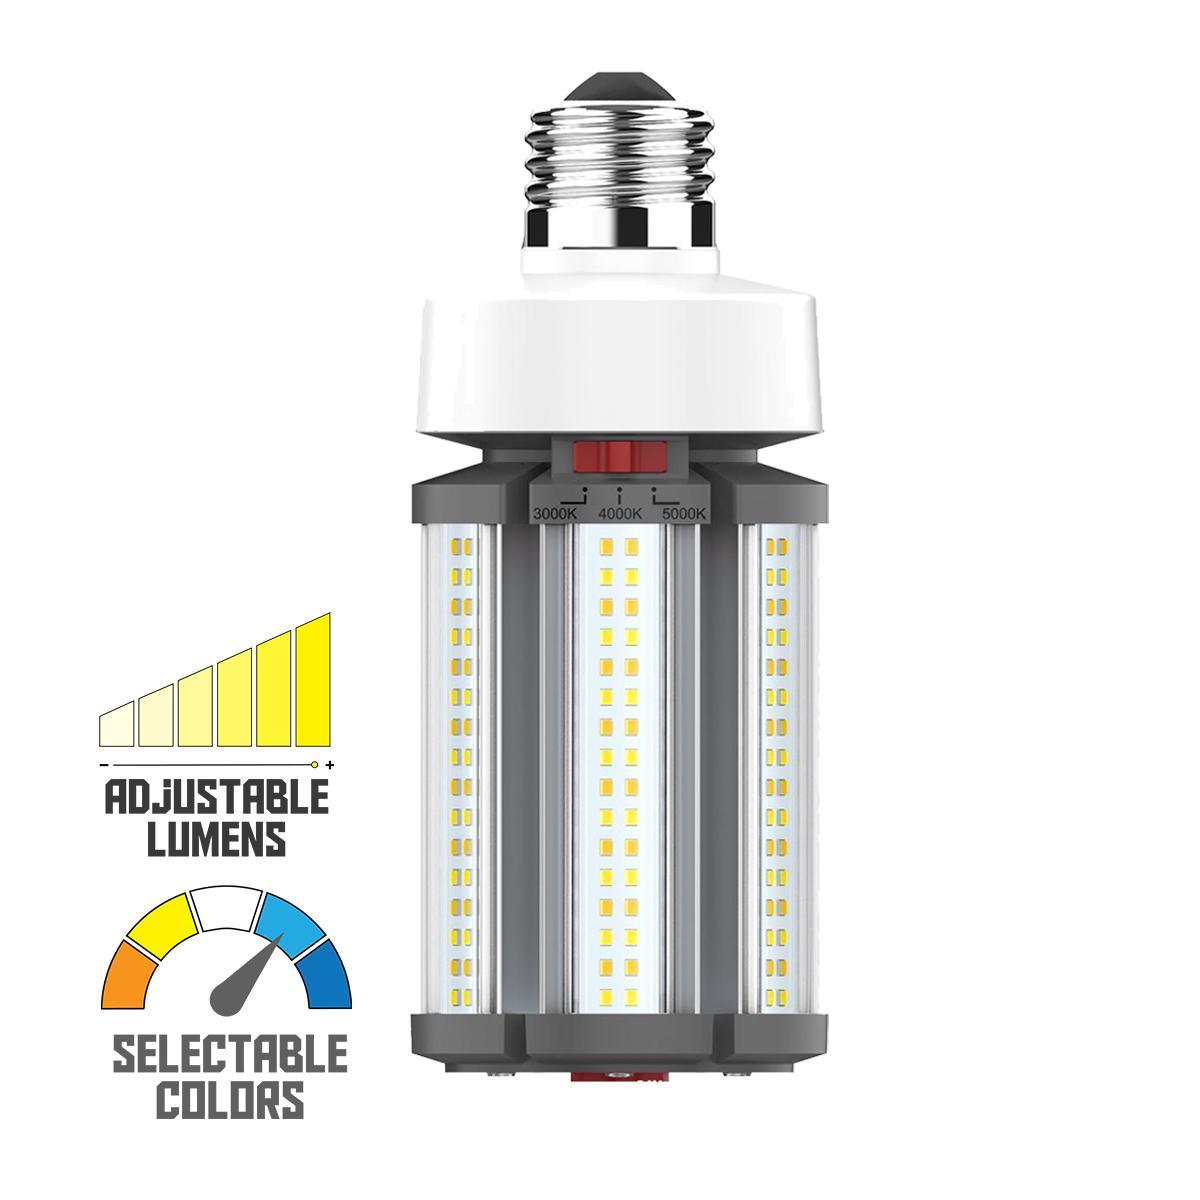 Hi-Pro Retrofit LED Corn Bulb, 45W, 6300 Lumens, Selectable CCT, 30K/40K/50K, E26 Base, 120-277V - Bees Lighting